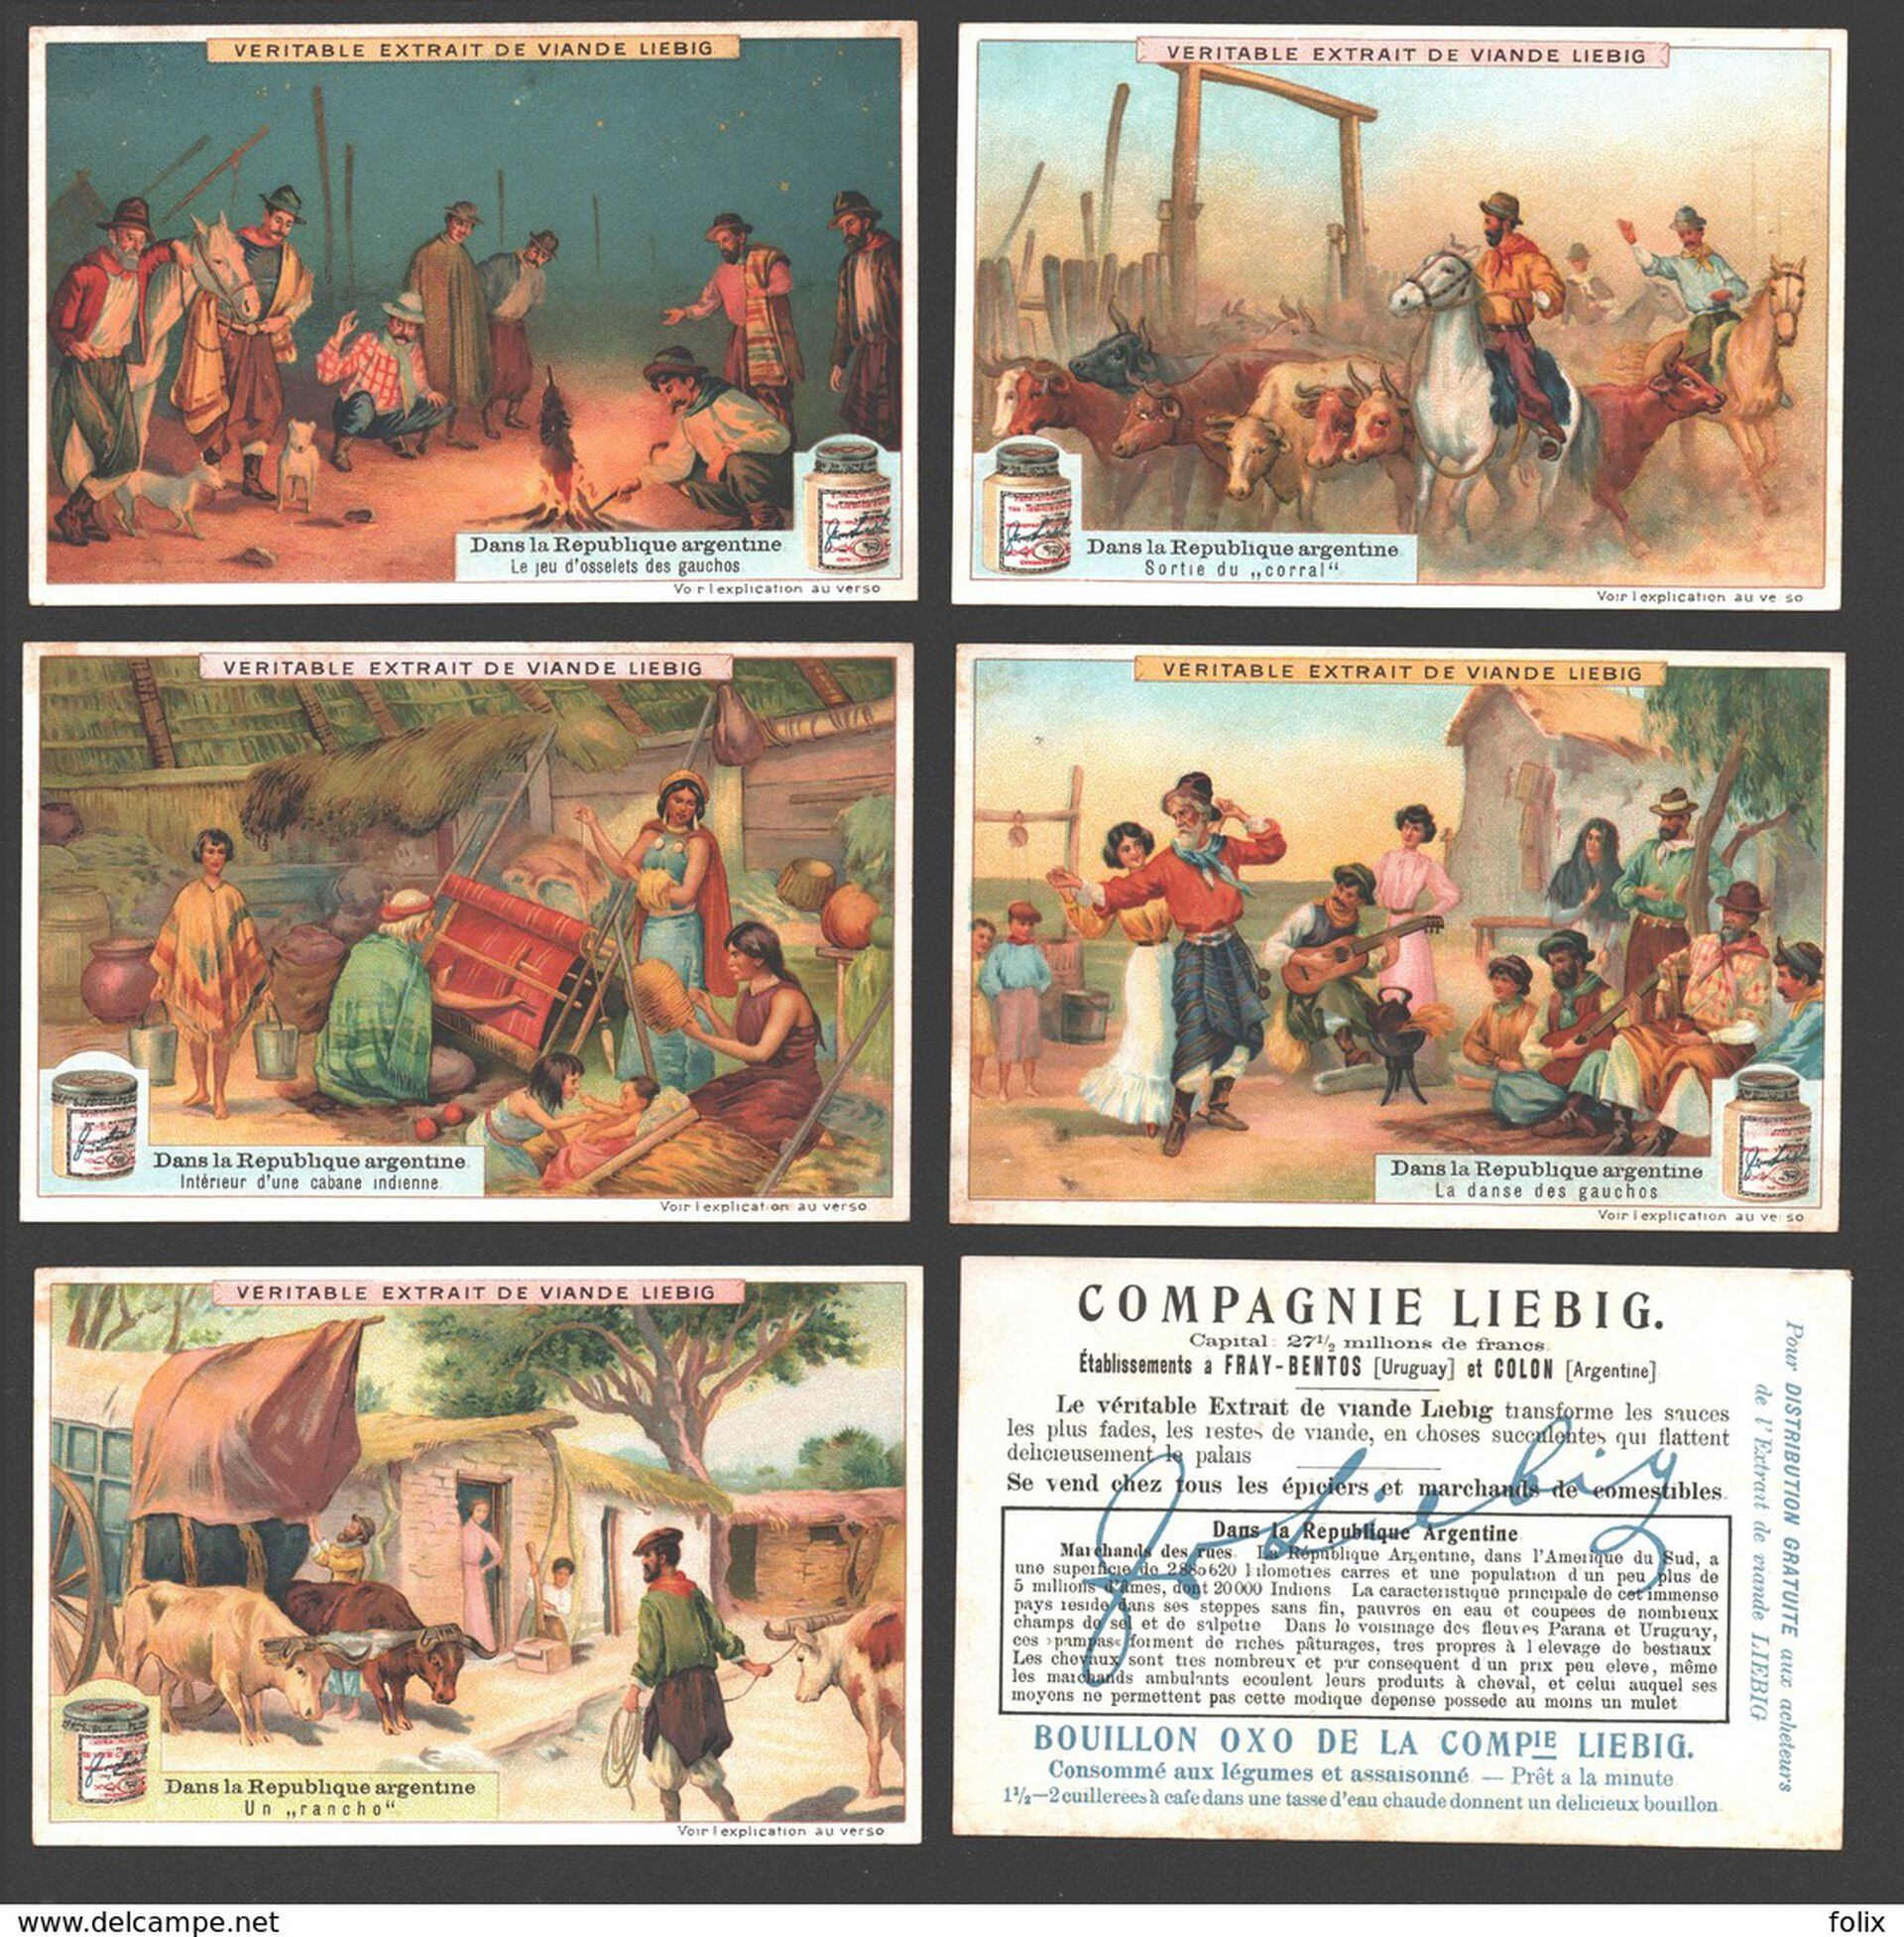 Motivos gauchescos en las postales de la compañía Liebig.